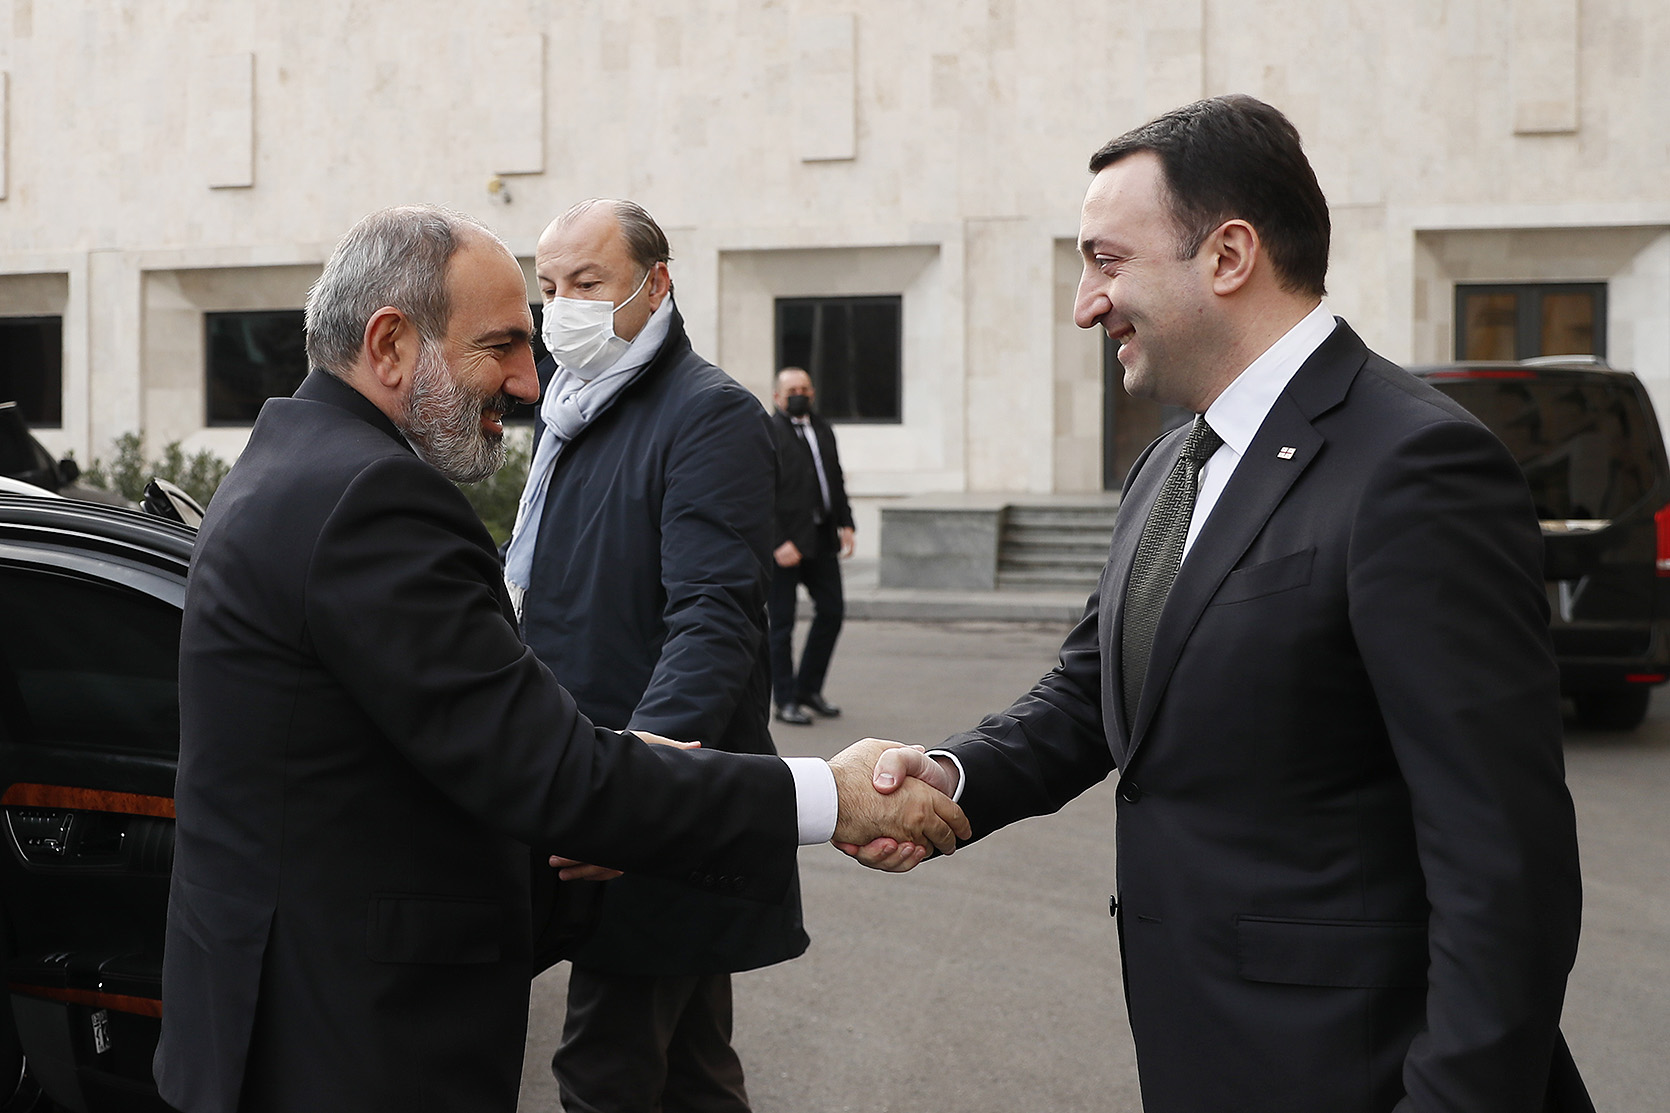 Гарибашвили: Грузия готова внести вклад в установление мира и стабильности в регионе